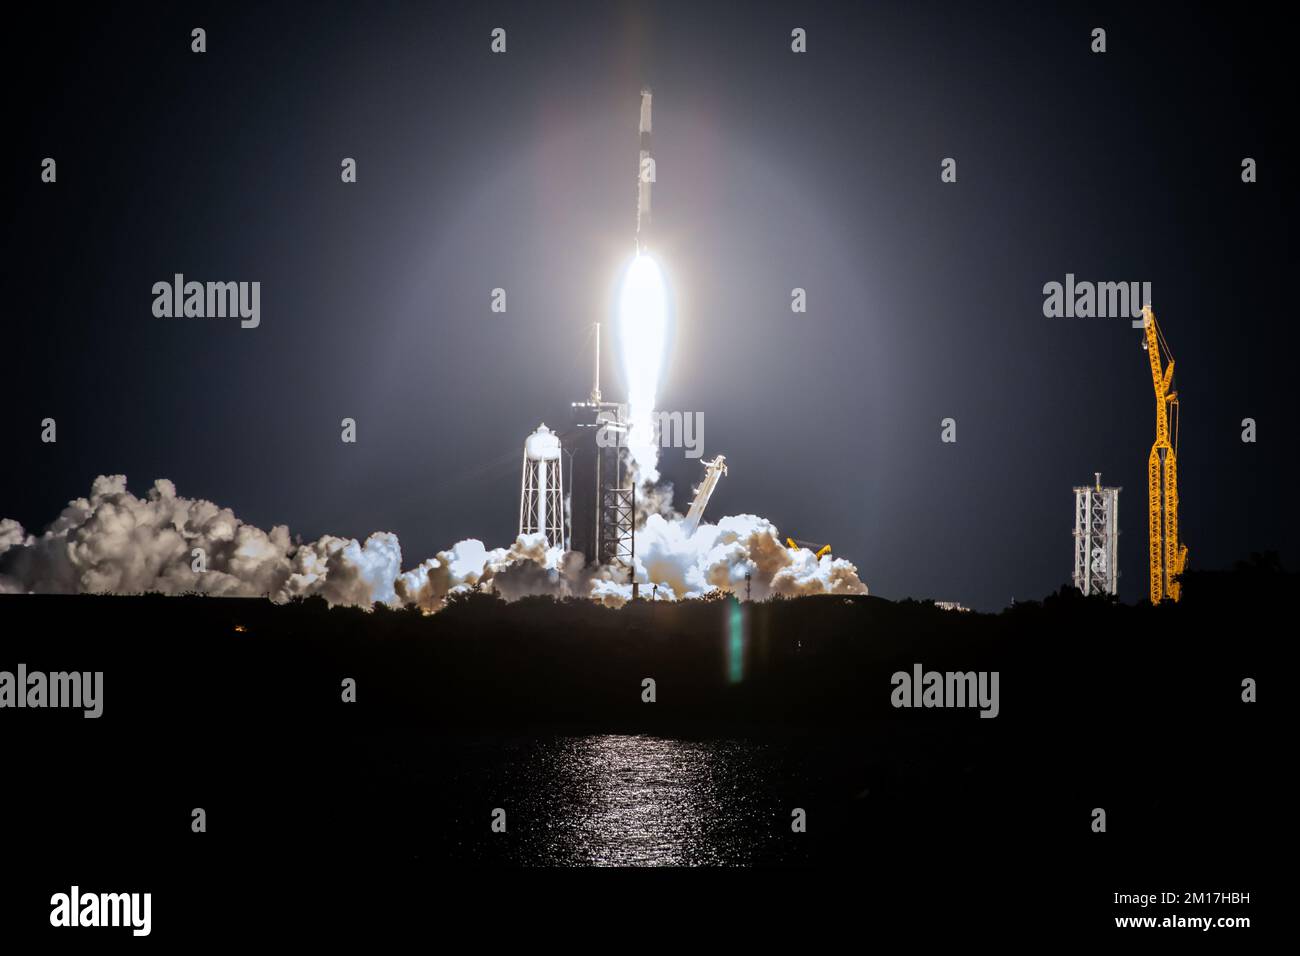 Die SpaceX-Rakete Falcon 9-Raketenkapsel steigt nach dem Abheben vom Startfeld nach oben. Digital optimiert. Elemente dieses Bildes, bereitgestellt von der NASA. Stockfoto